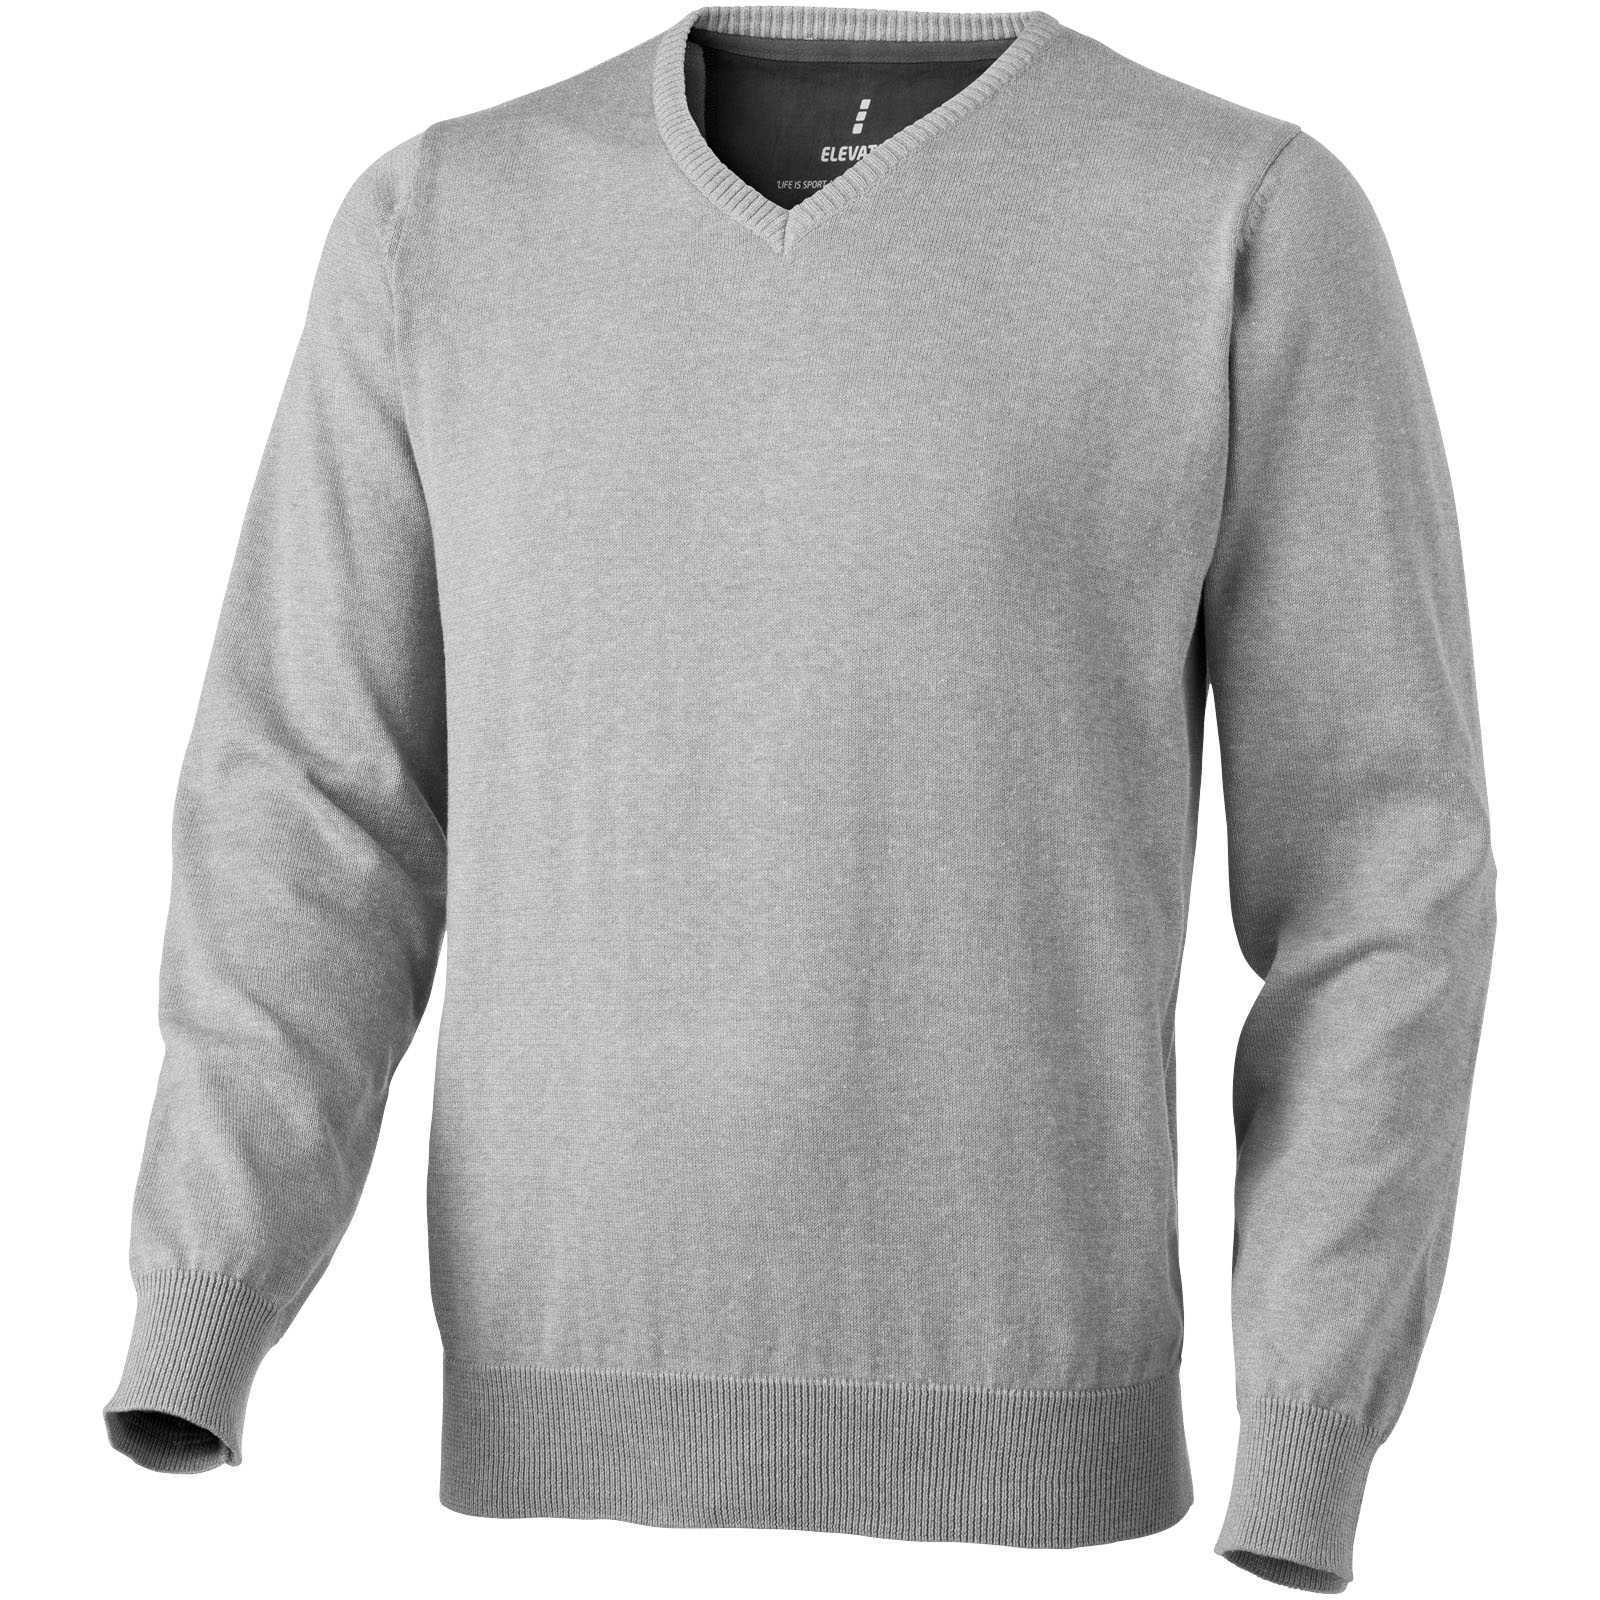 Contrast V-neck Sweater - Littledean - Zeals